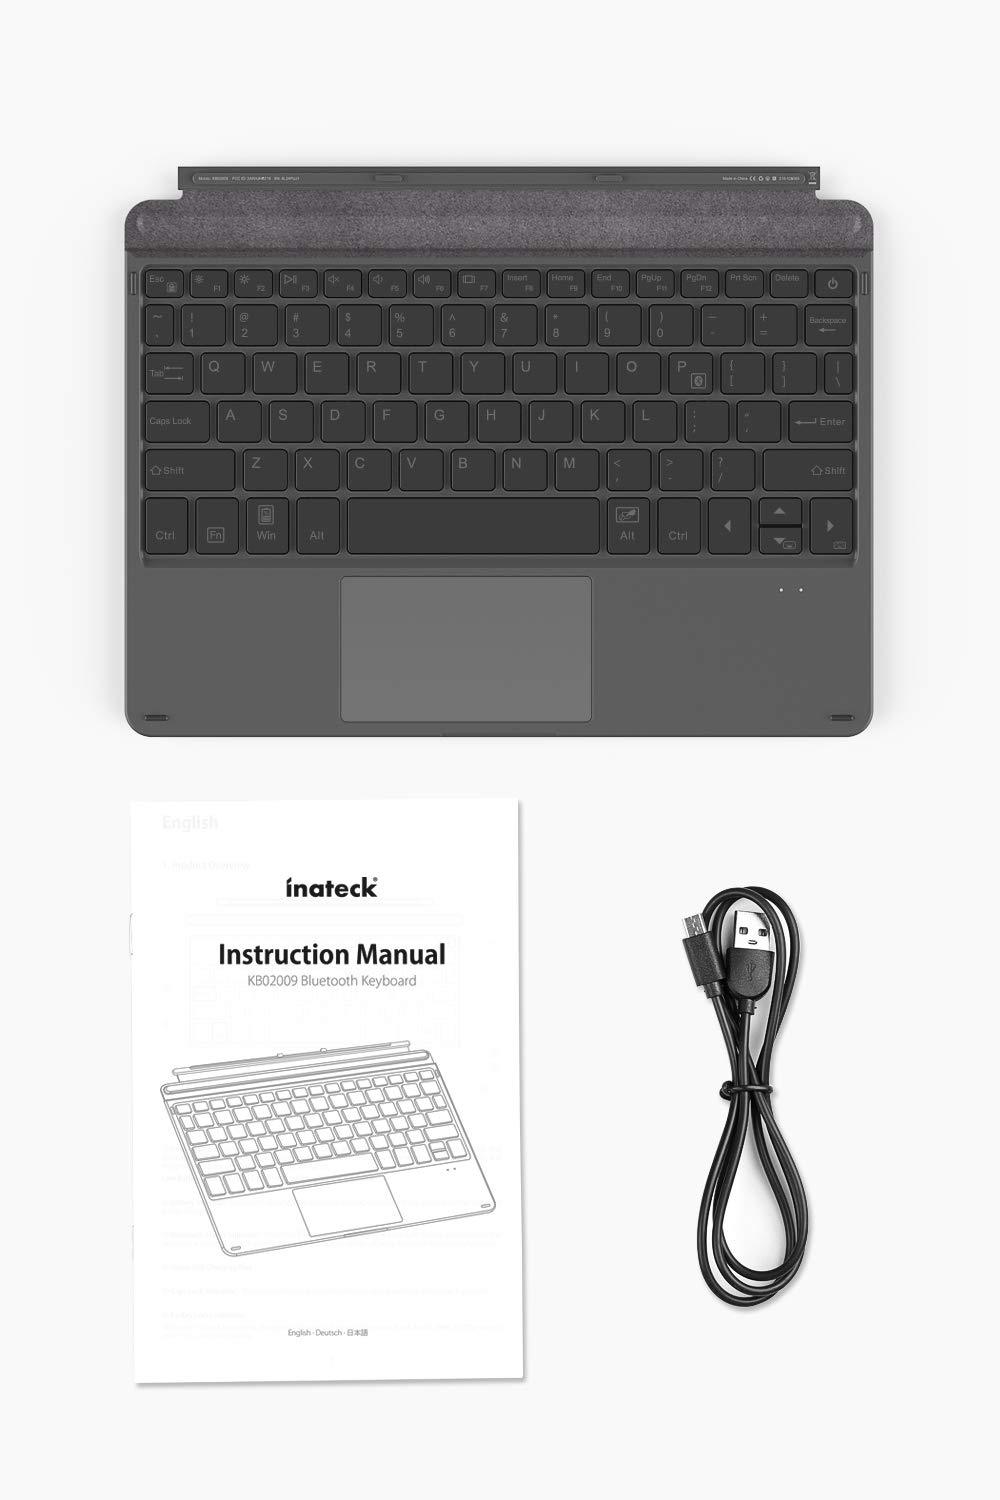 Surface Go 純正キーボードカバー付